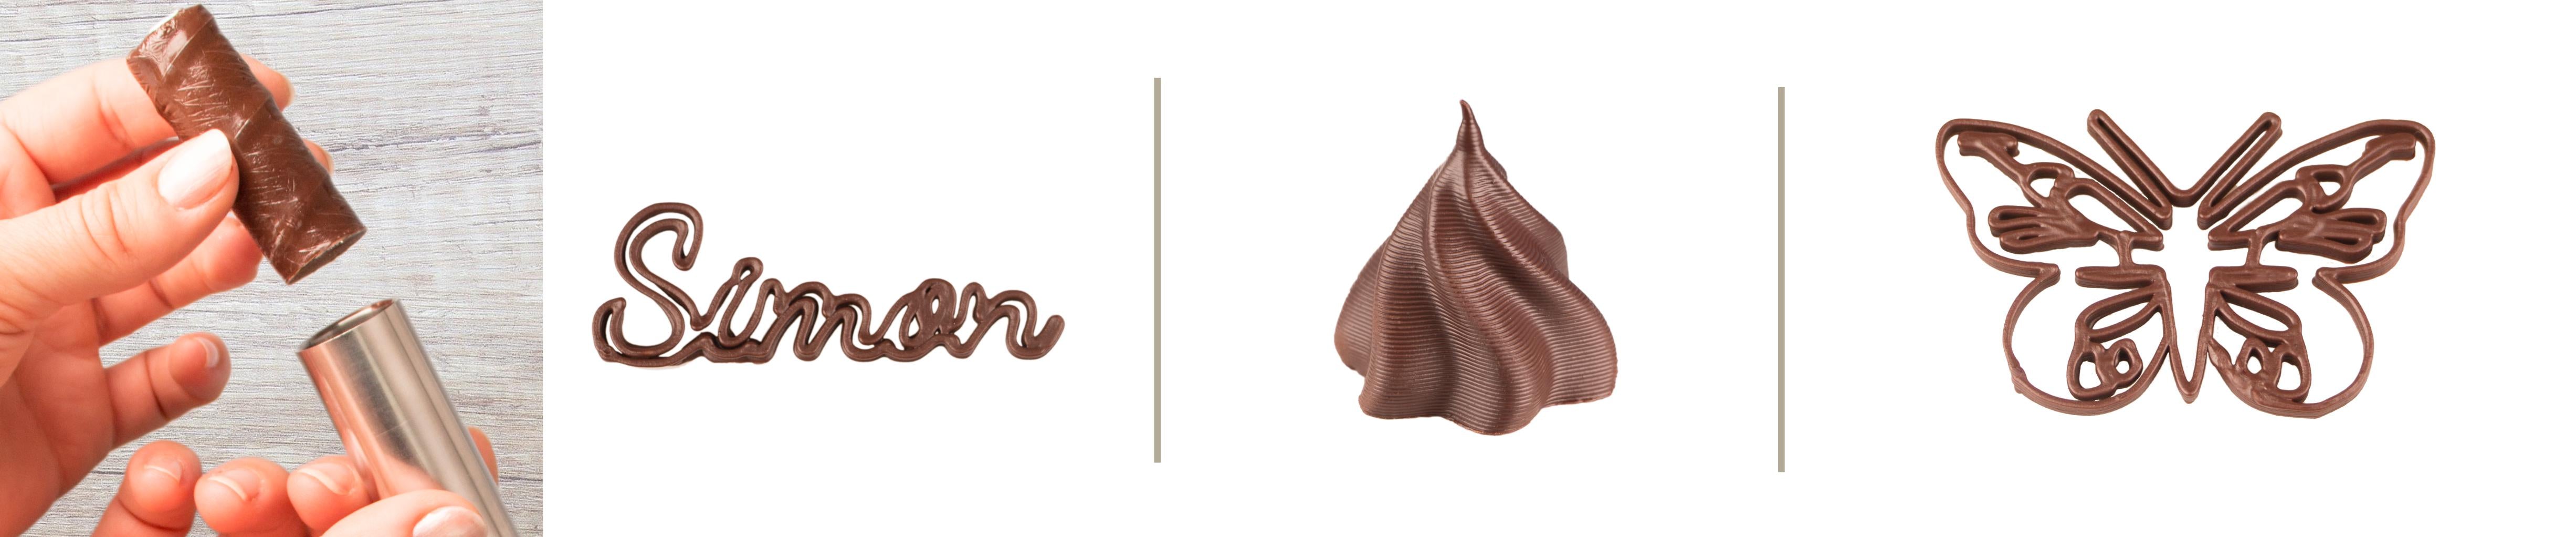 Ergiebigkeit 3D Schokoladendrucker mycusini Wie viel geht raus